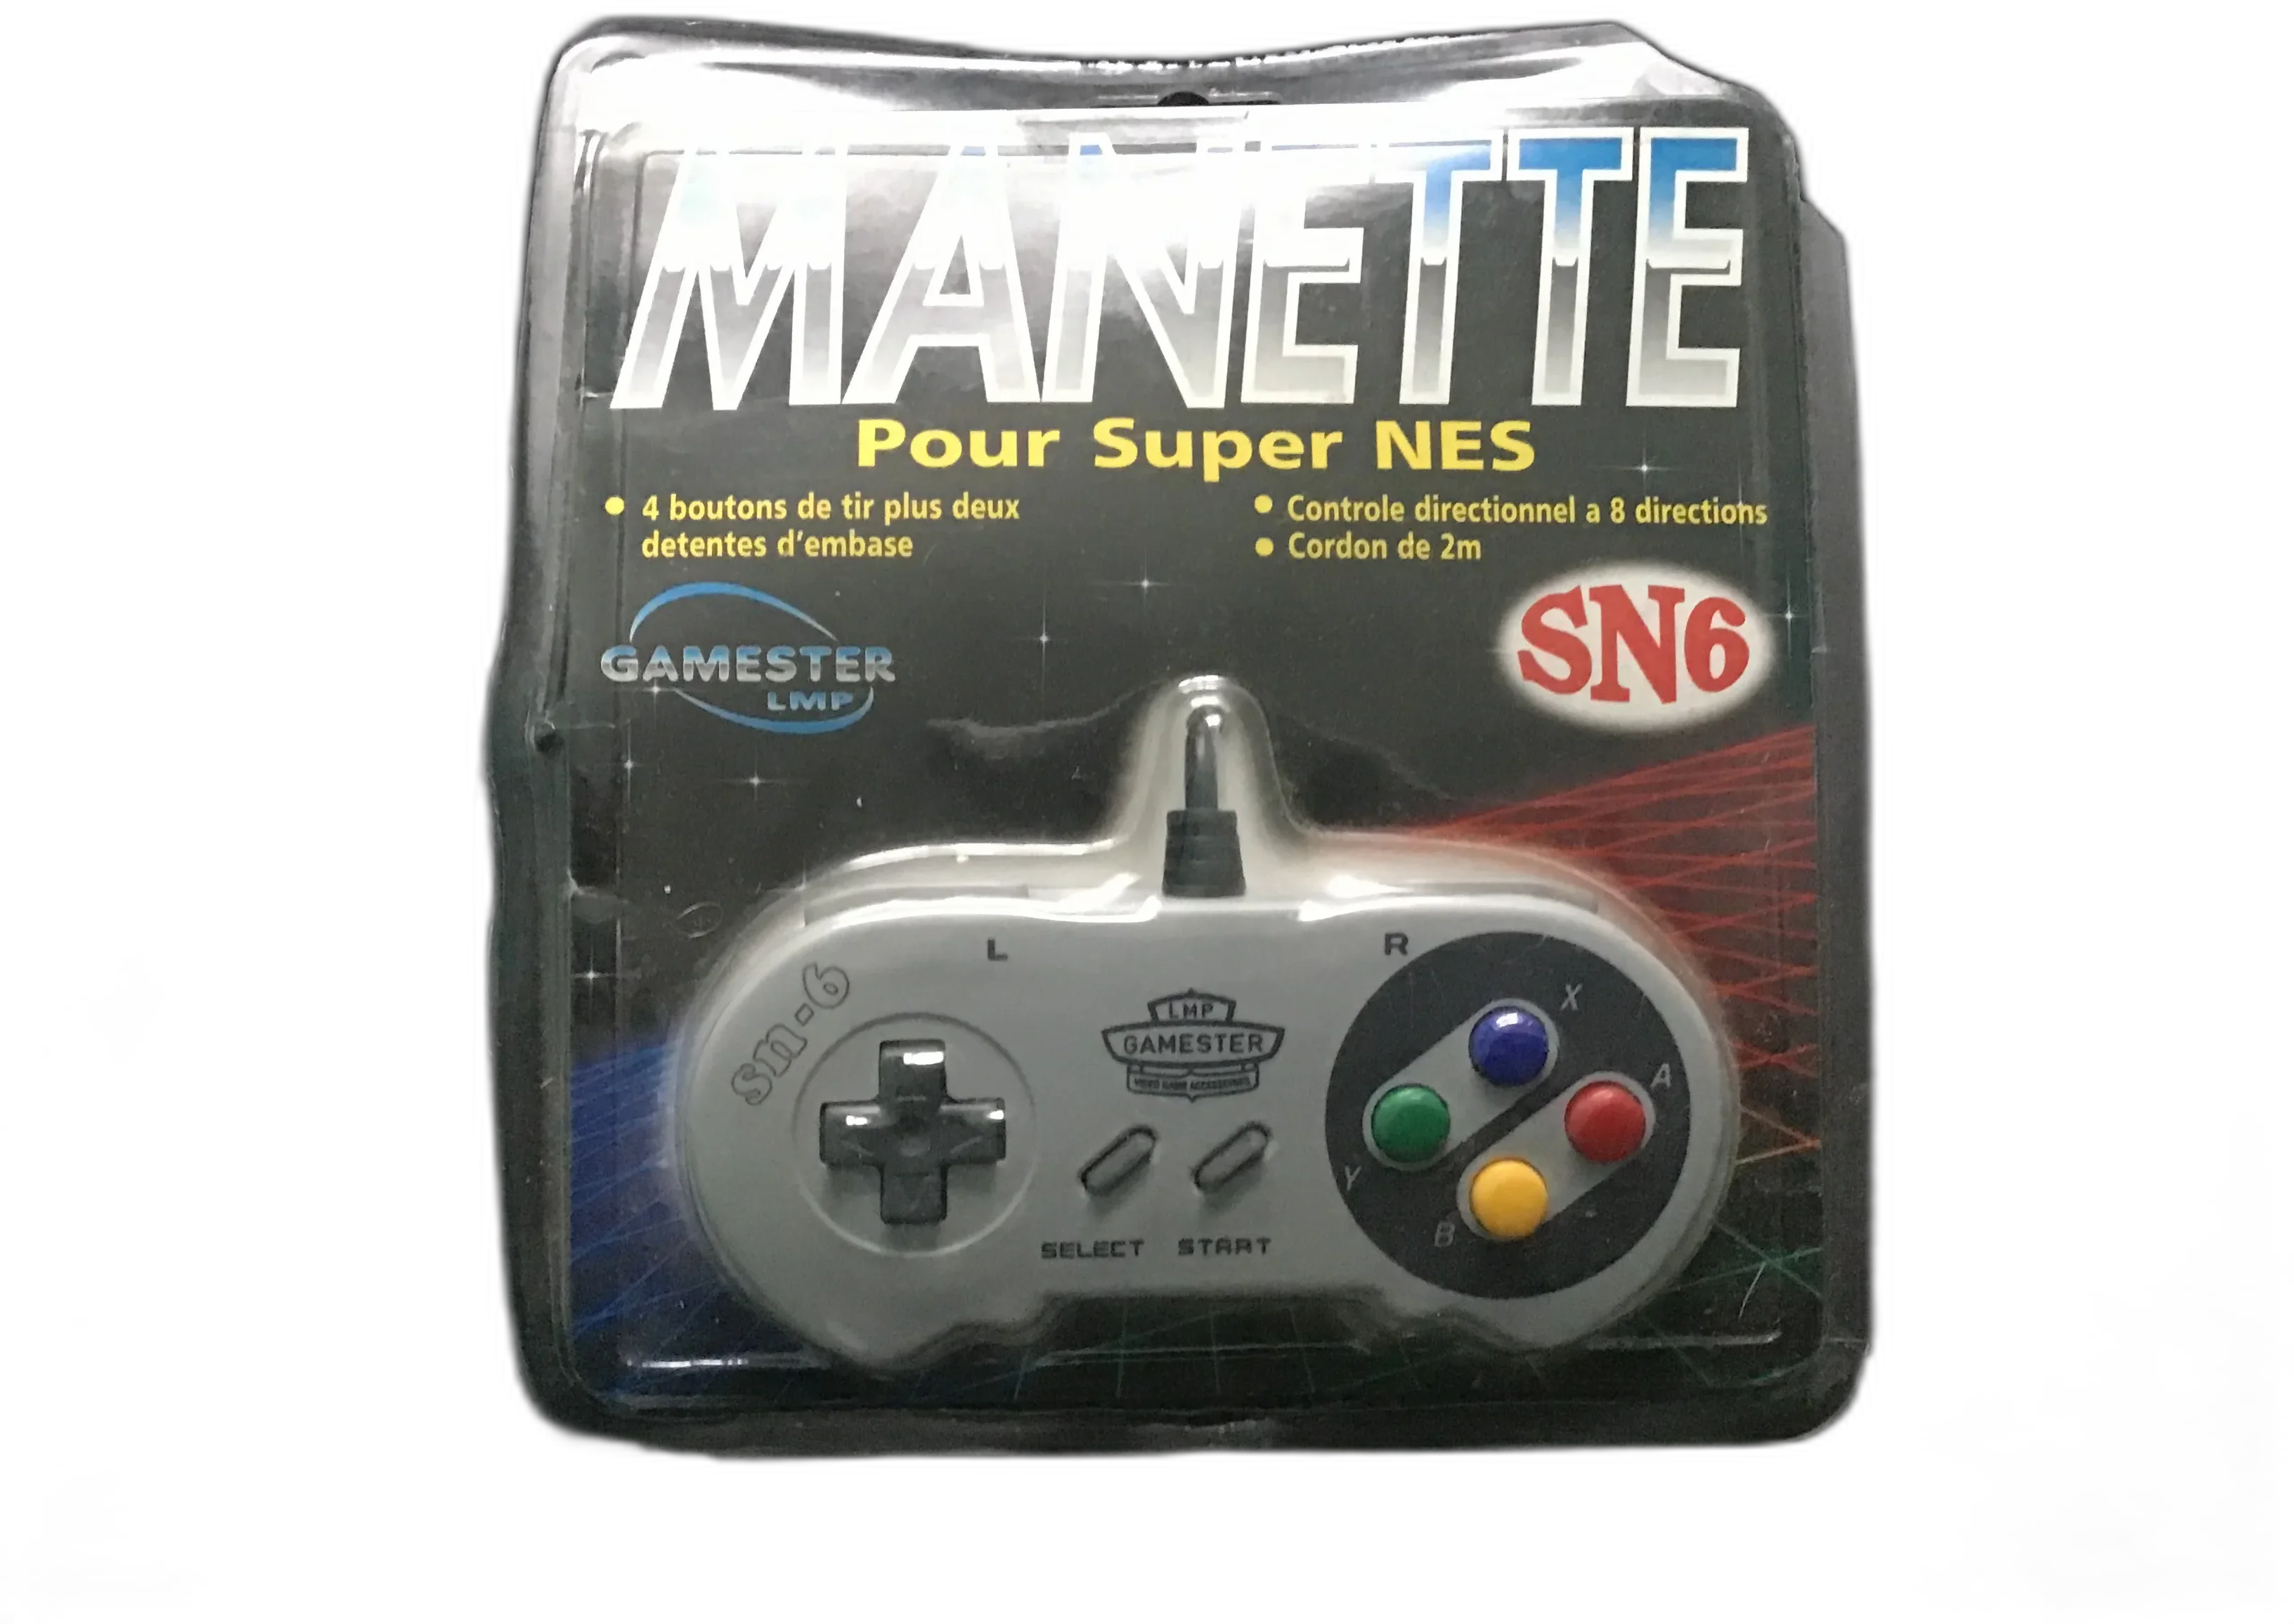  Gamester SNES SN6 Controller